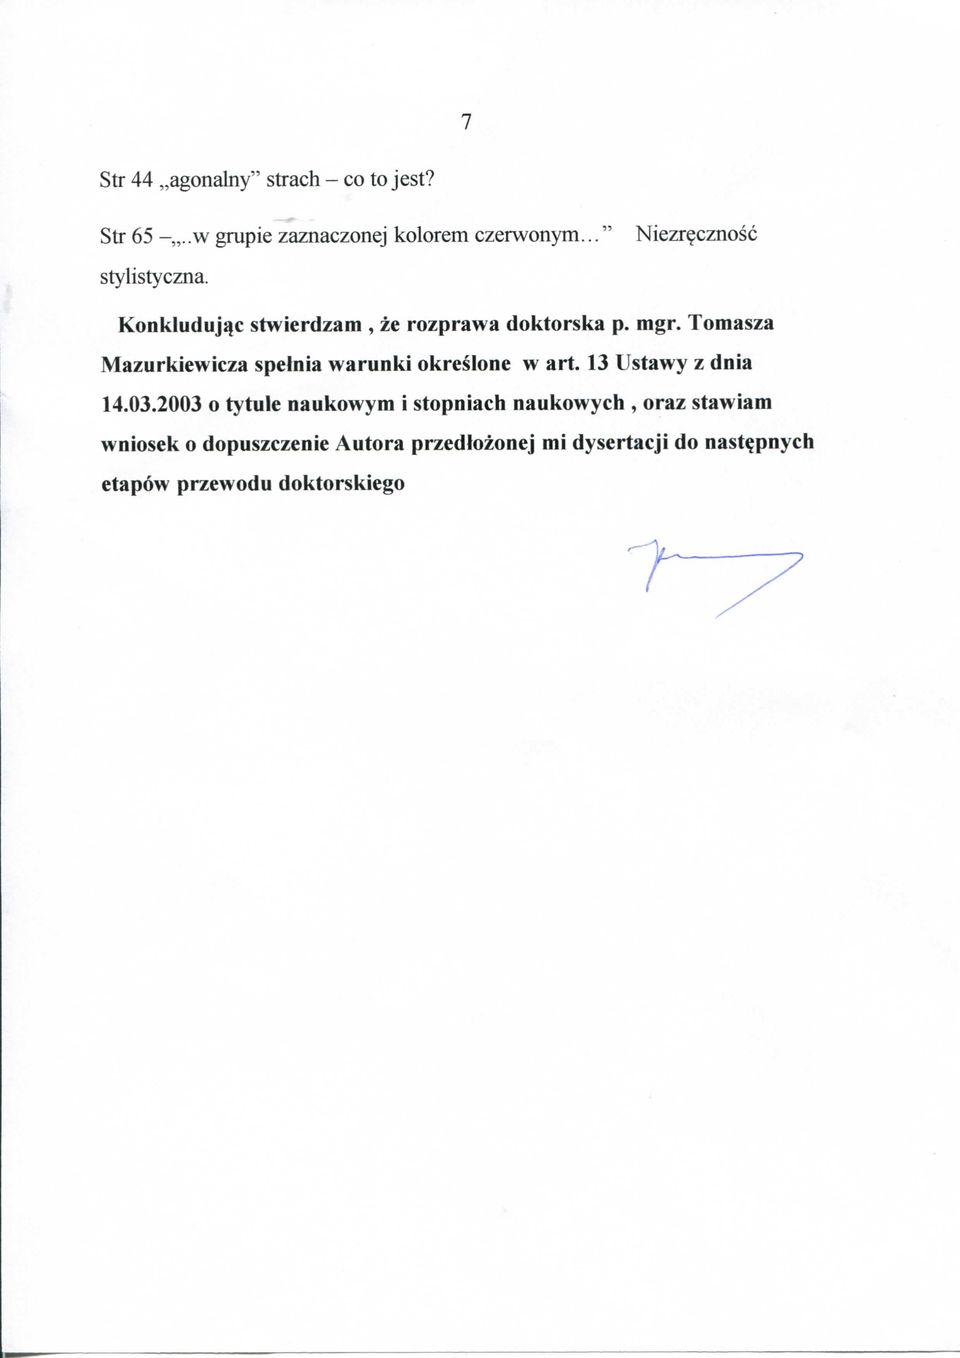 Tomasza Mazurkiewicza spelnia warunki okreslone w art. 13 Ustawy z dnia 14.03.